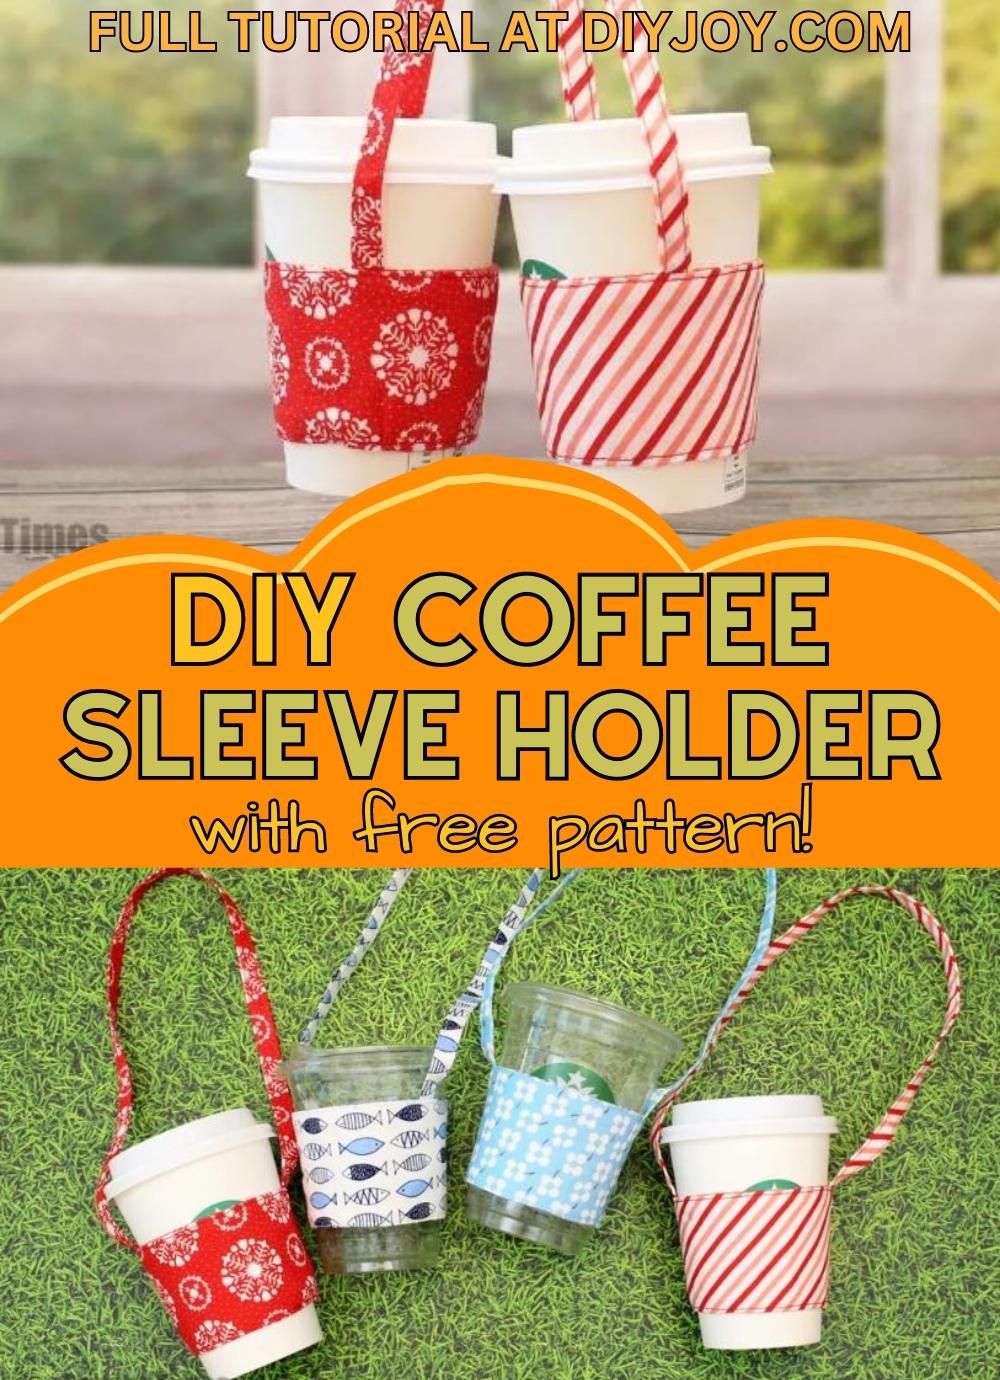 DIY Coffee Sleeve Holder Tutorial